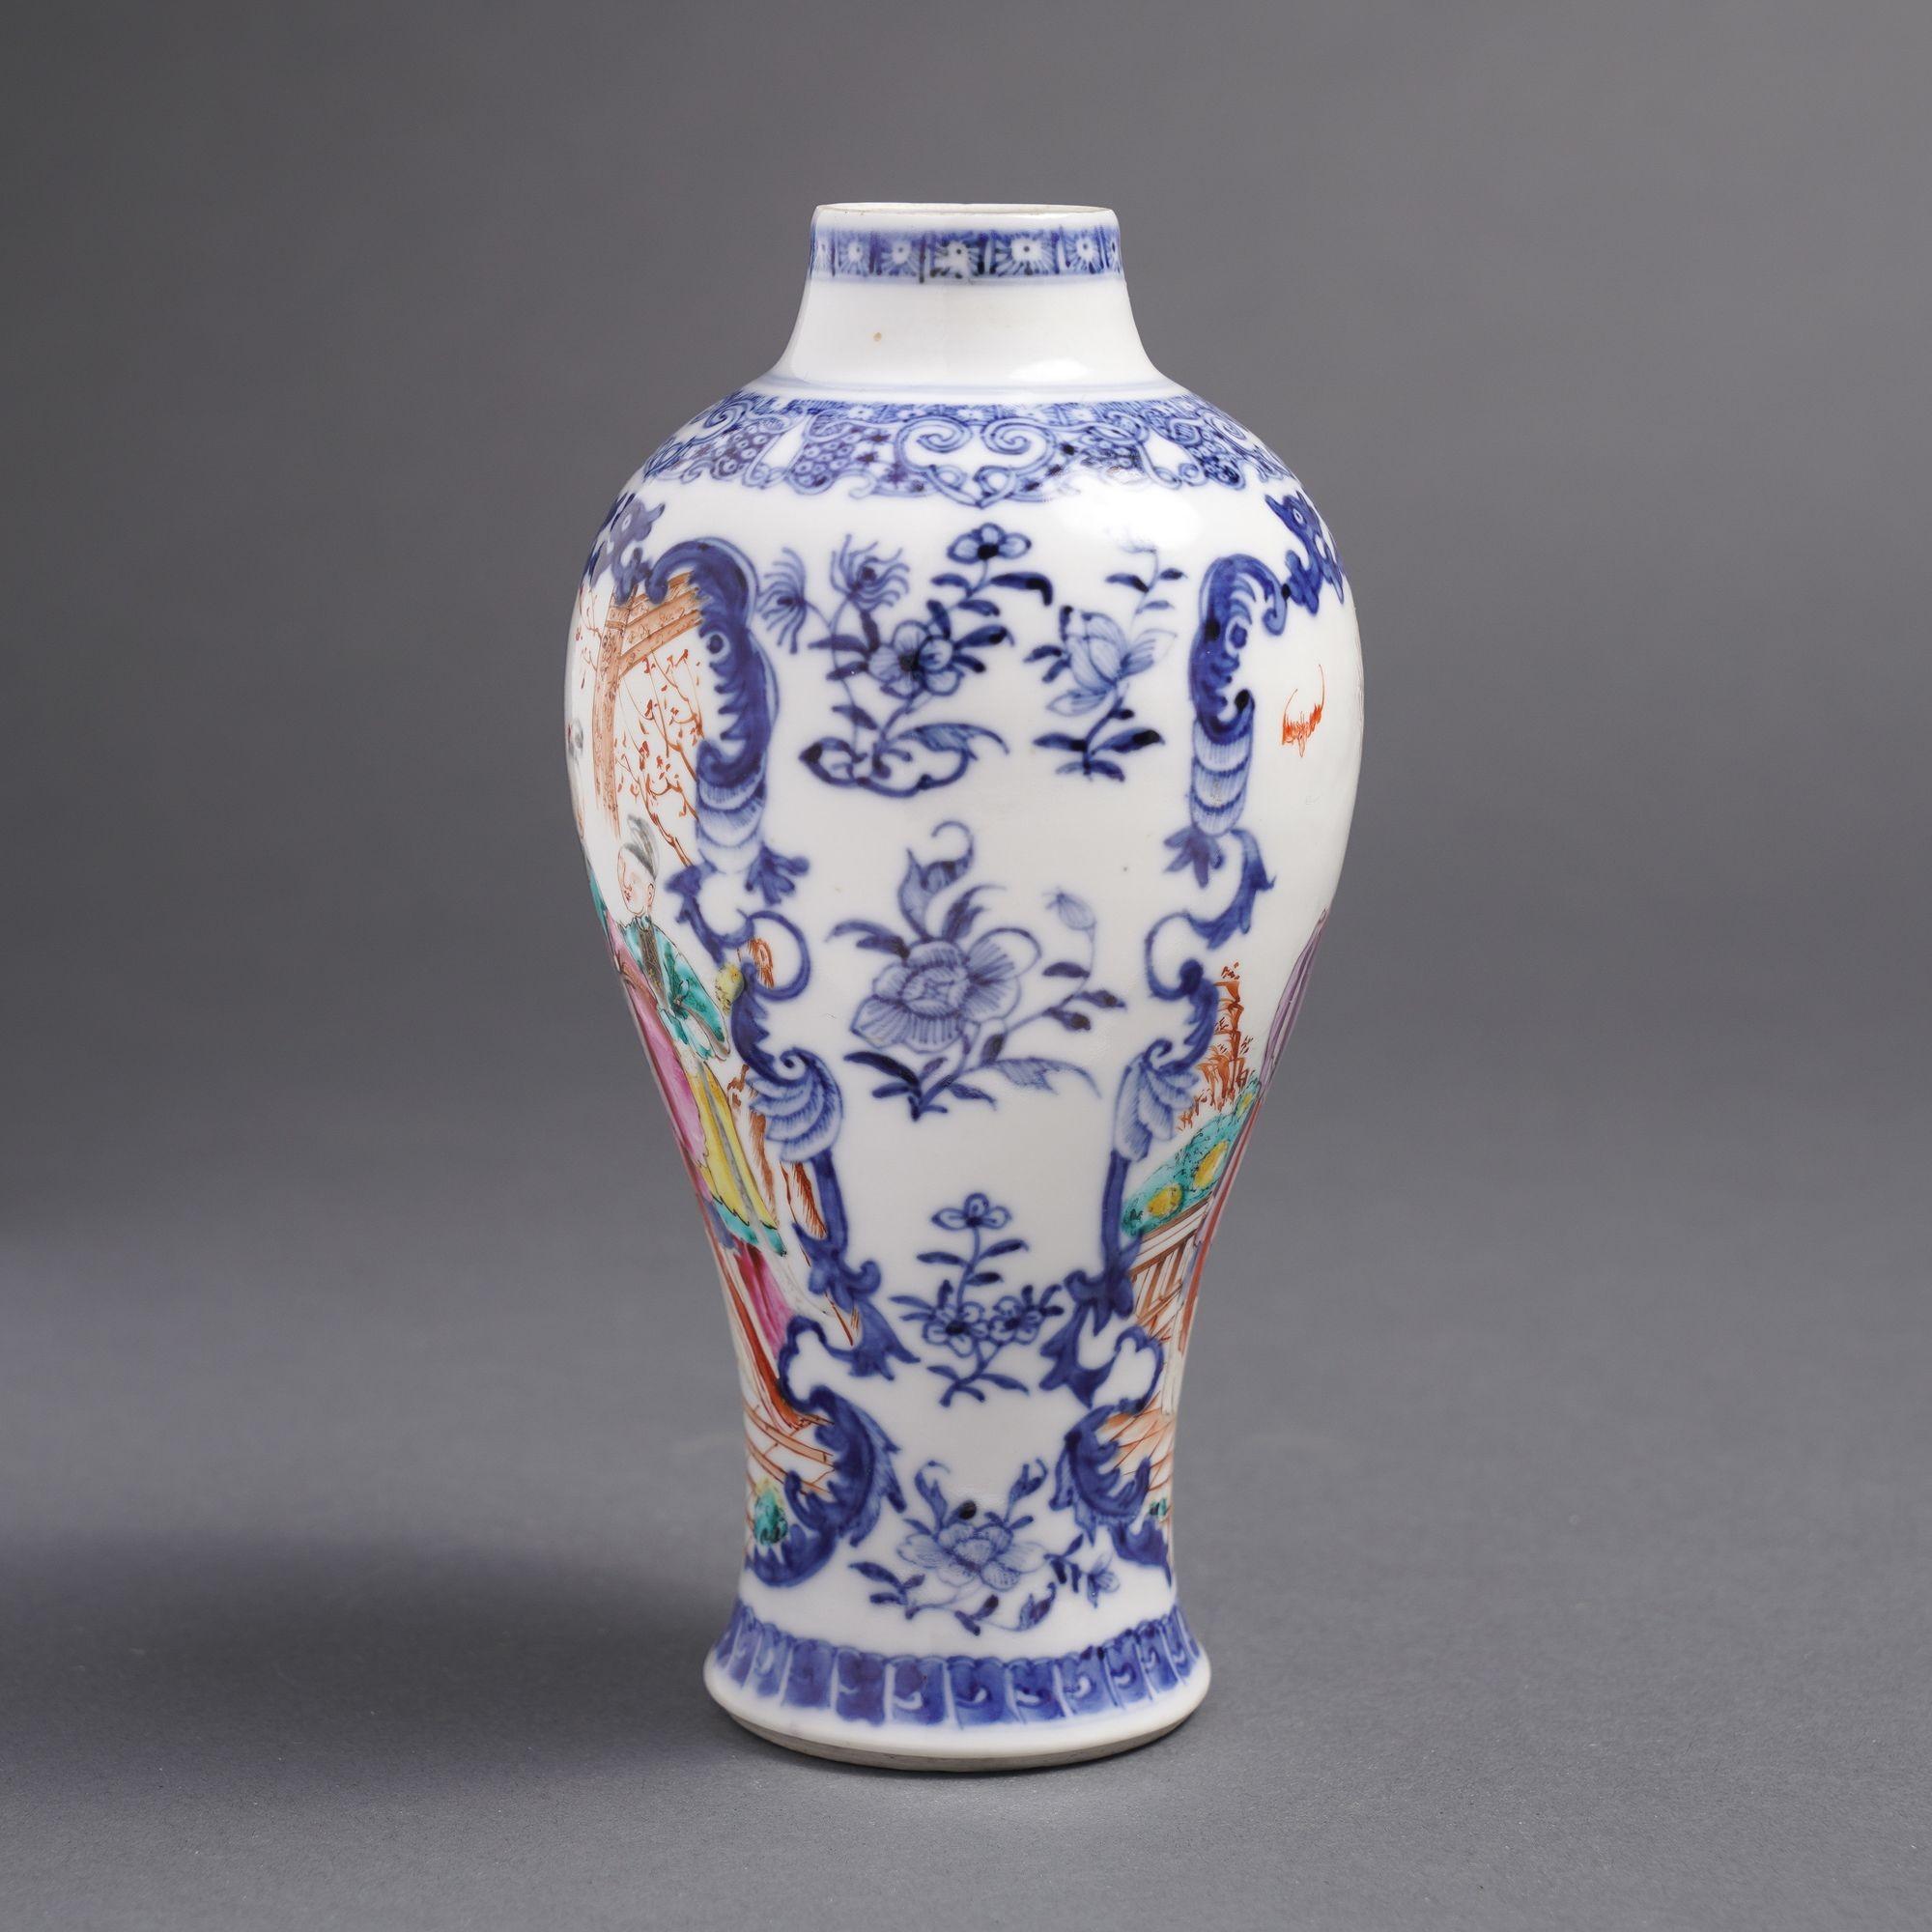 Chinesischer Export Baluster Form Garnitur Vase mit famille rose figuralen Szenen in Kobalt unter Glasur blauen Blättern Arbeit Grenzen, auf gegenüberliegenden Seiten der Vase.

China, hergestellt für den westlichen Handel, um 1780.